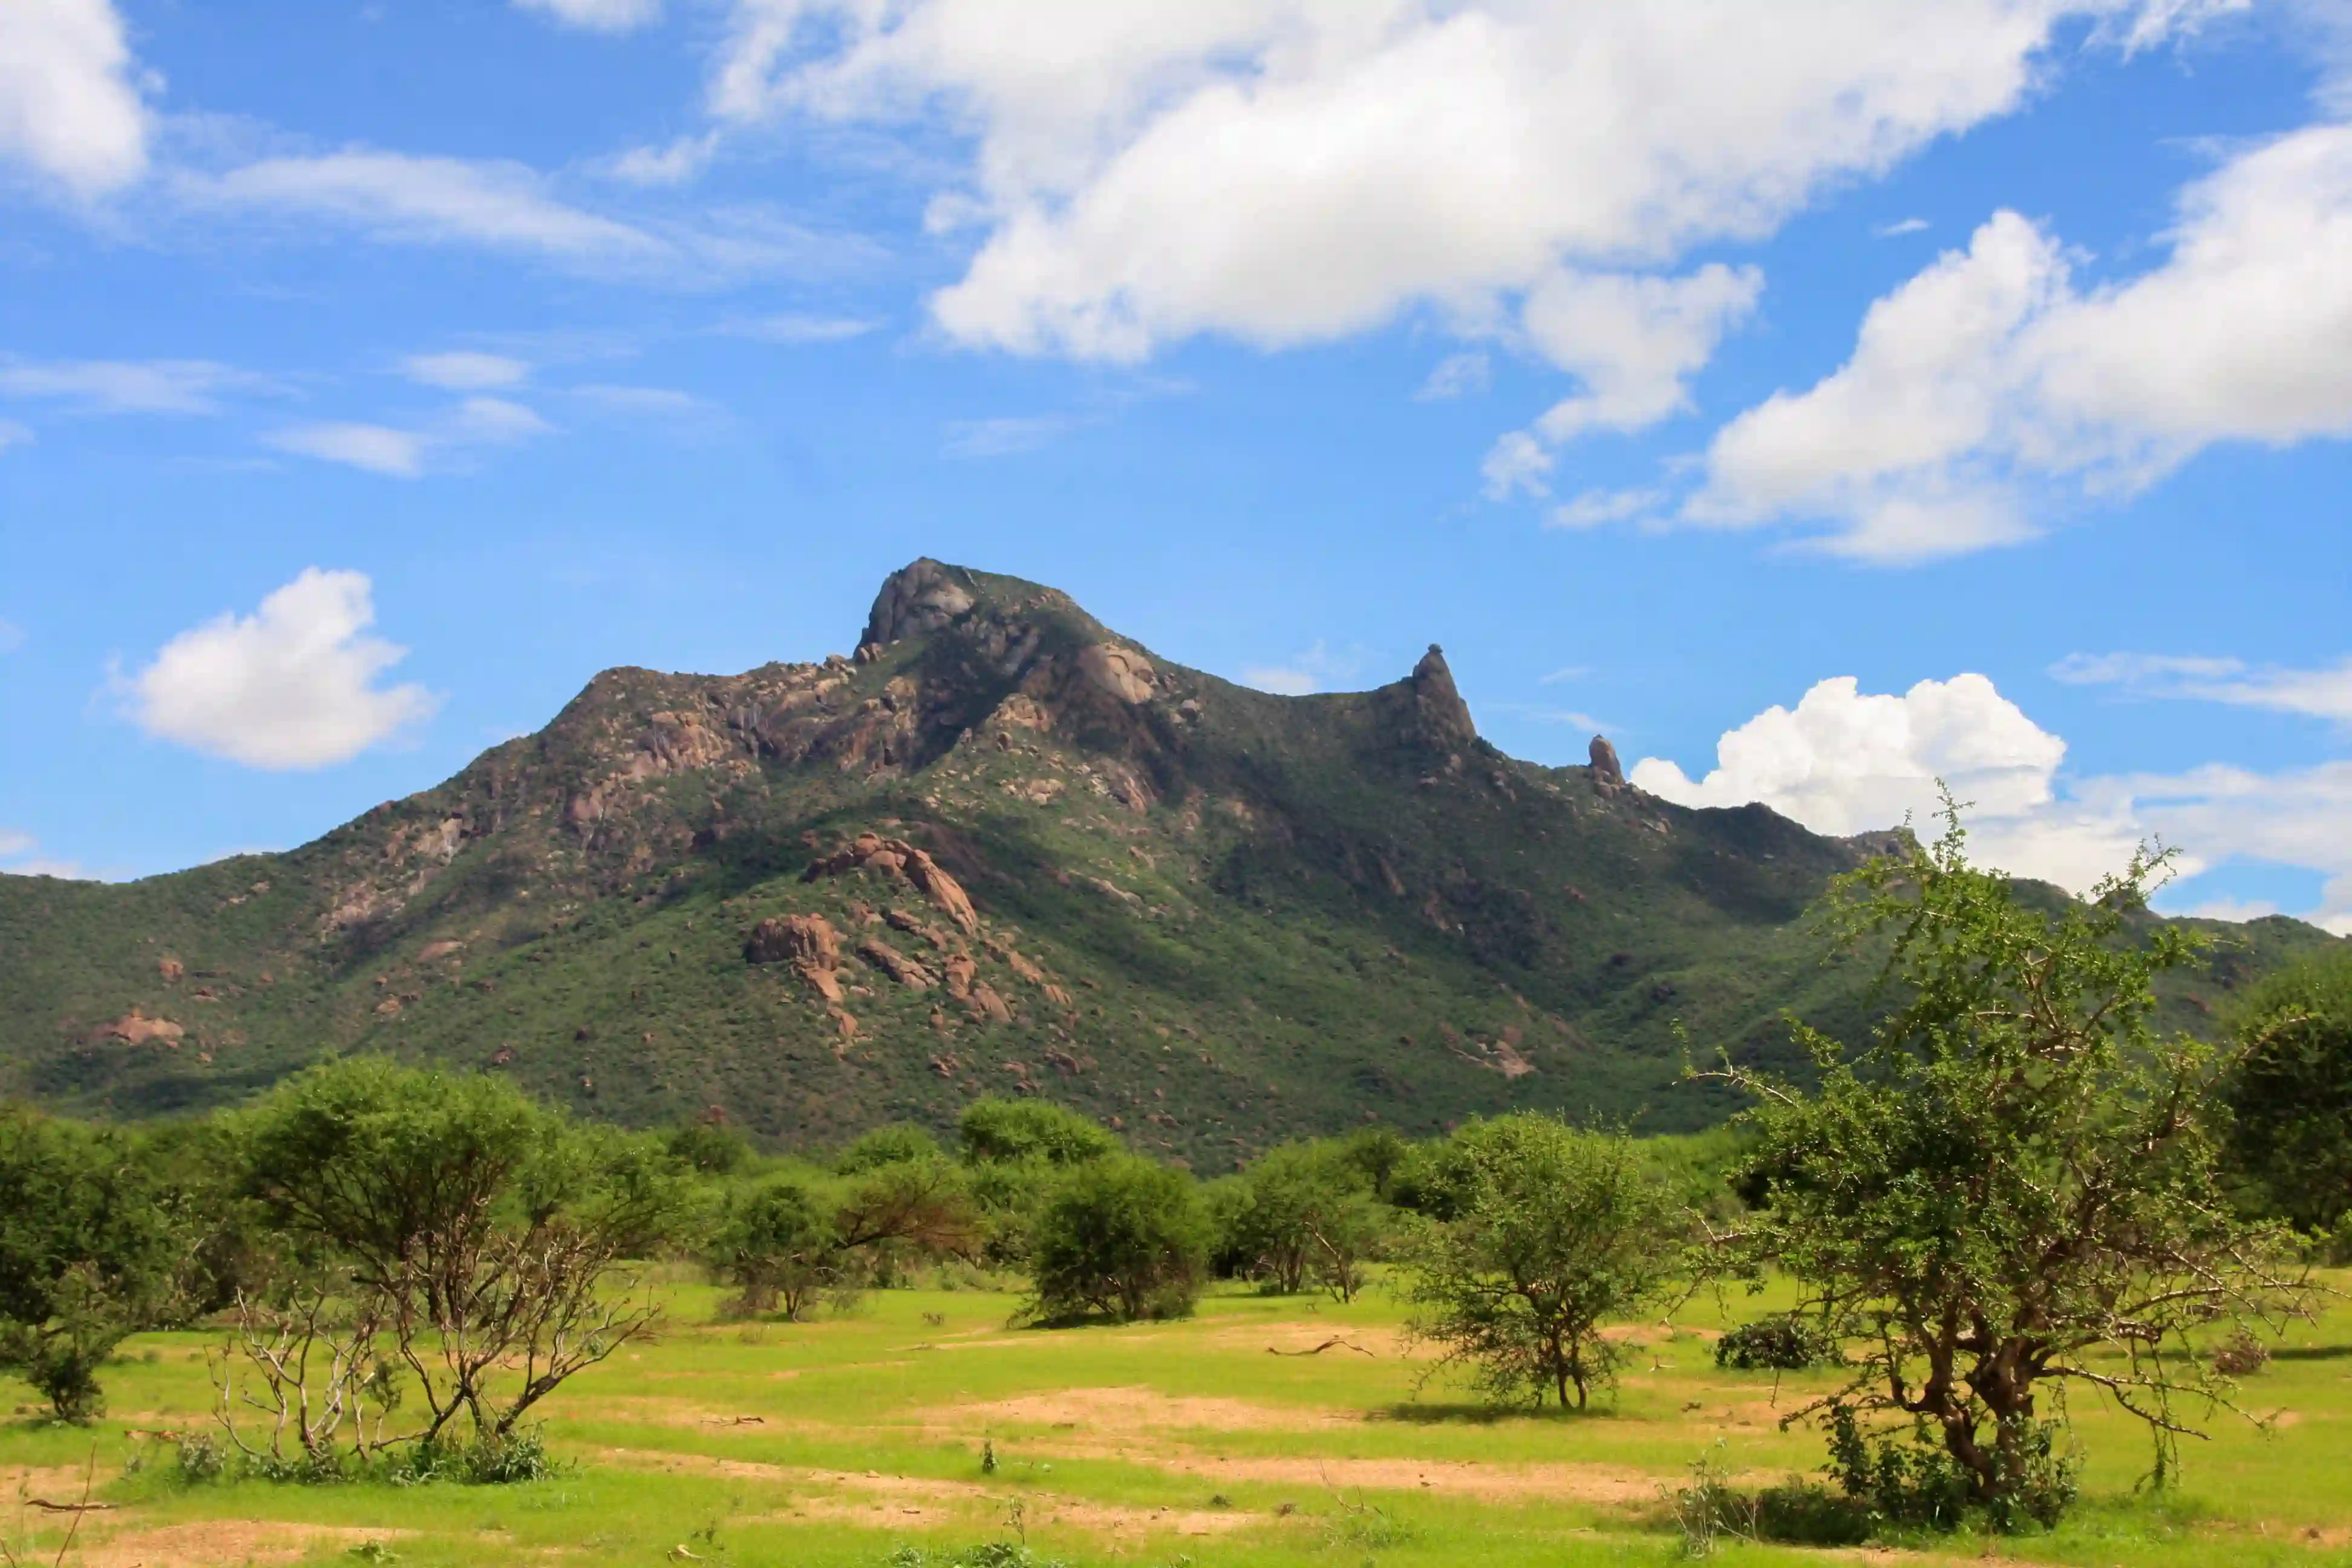 Mount kenya Area1